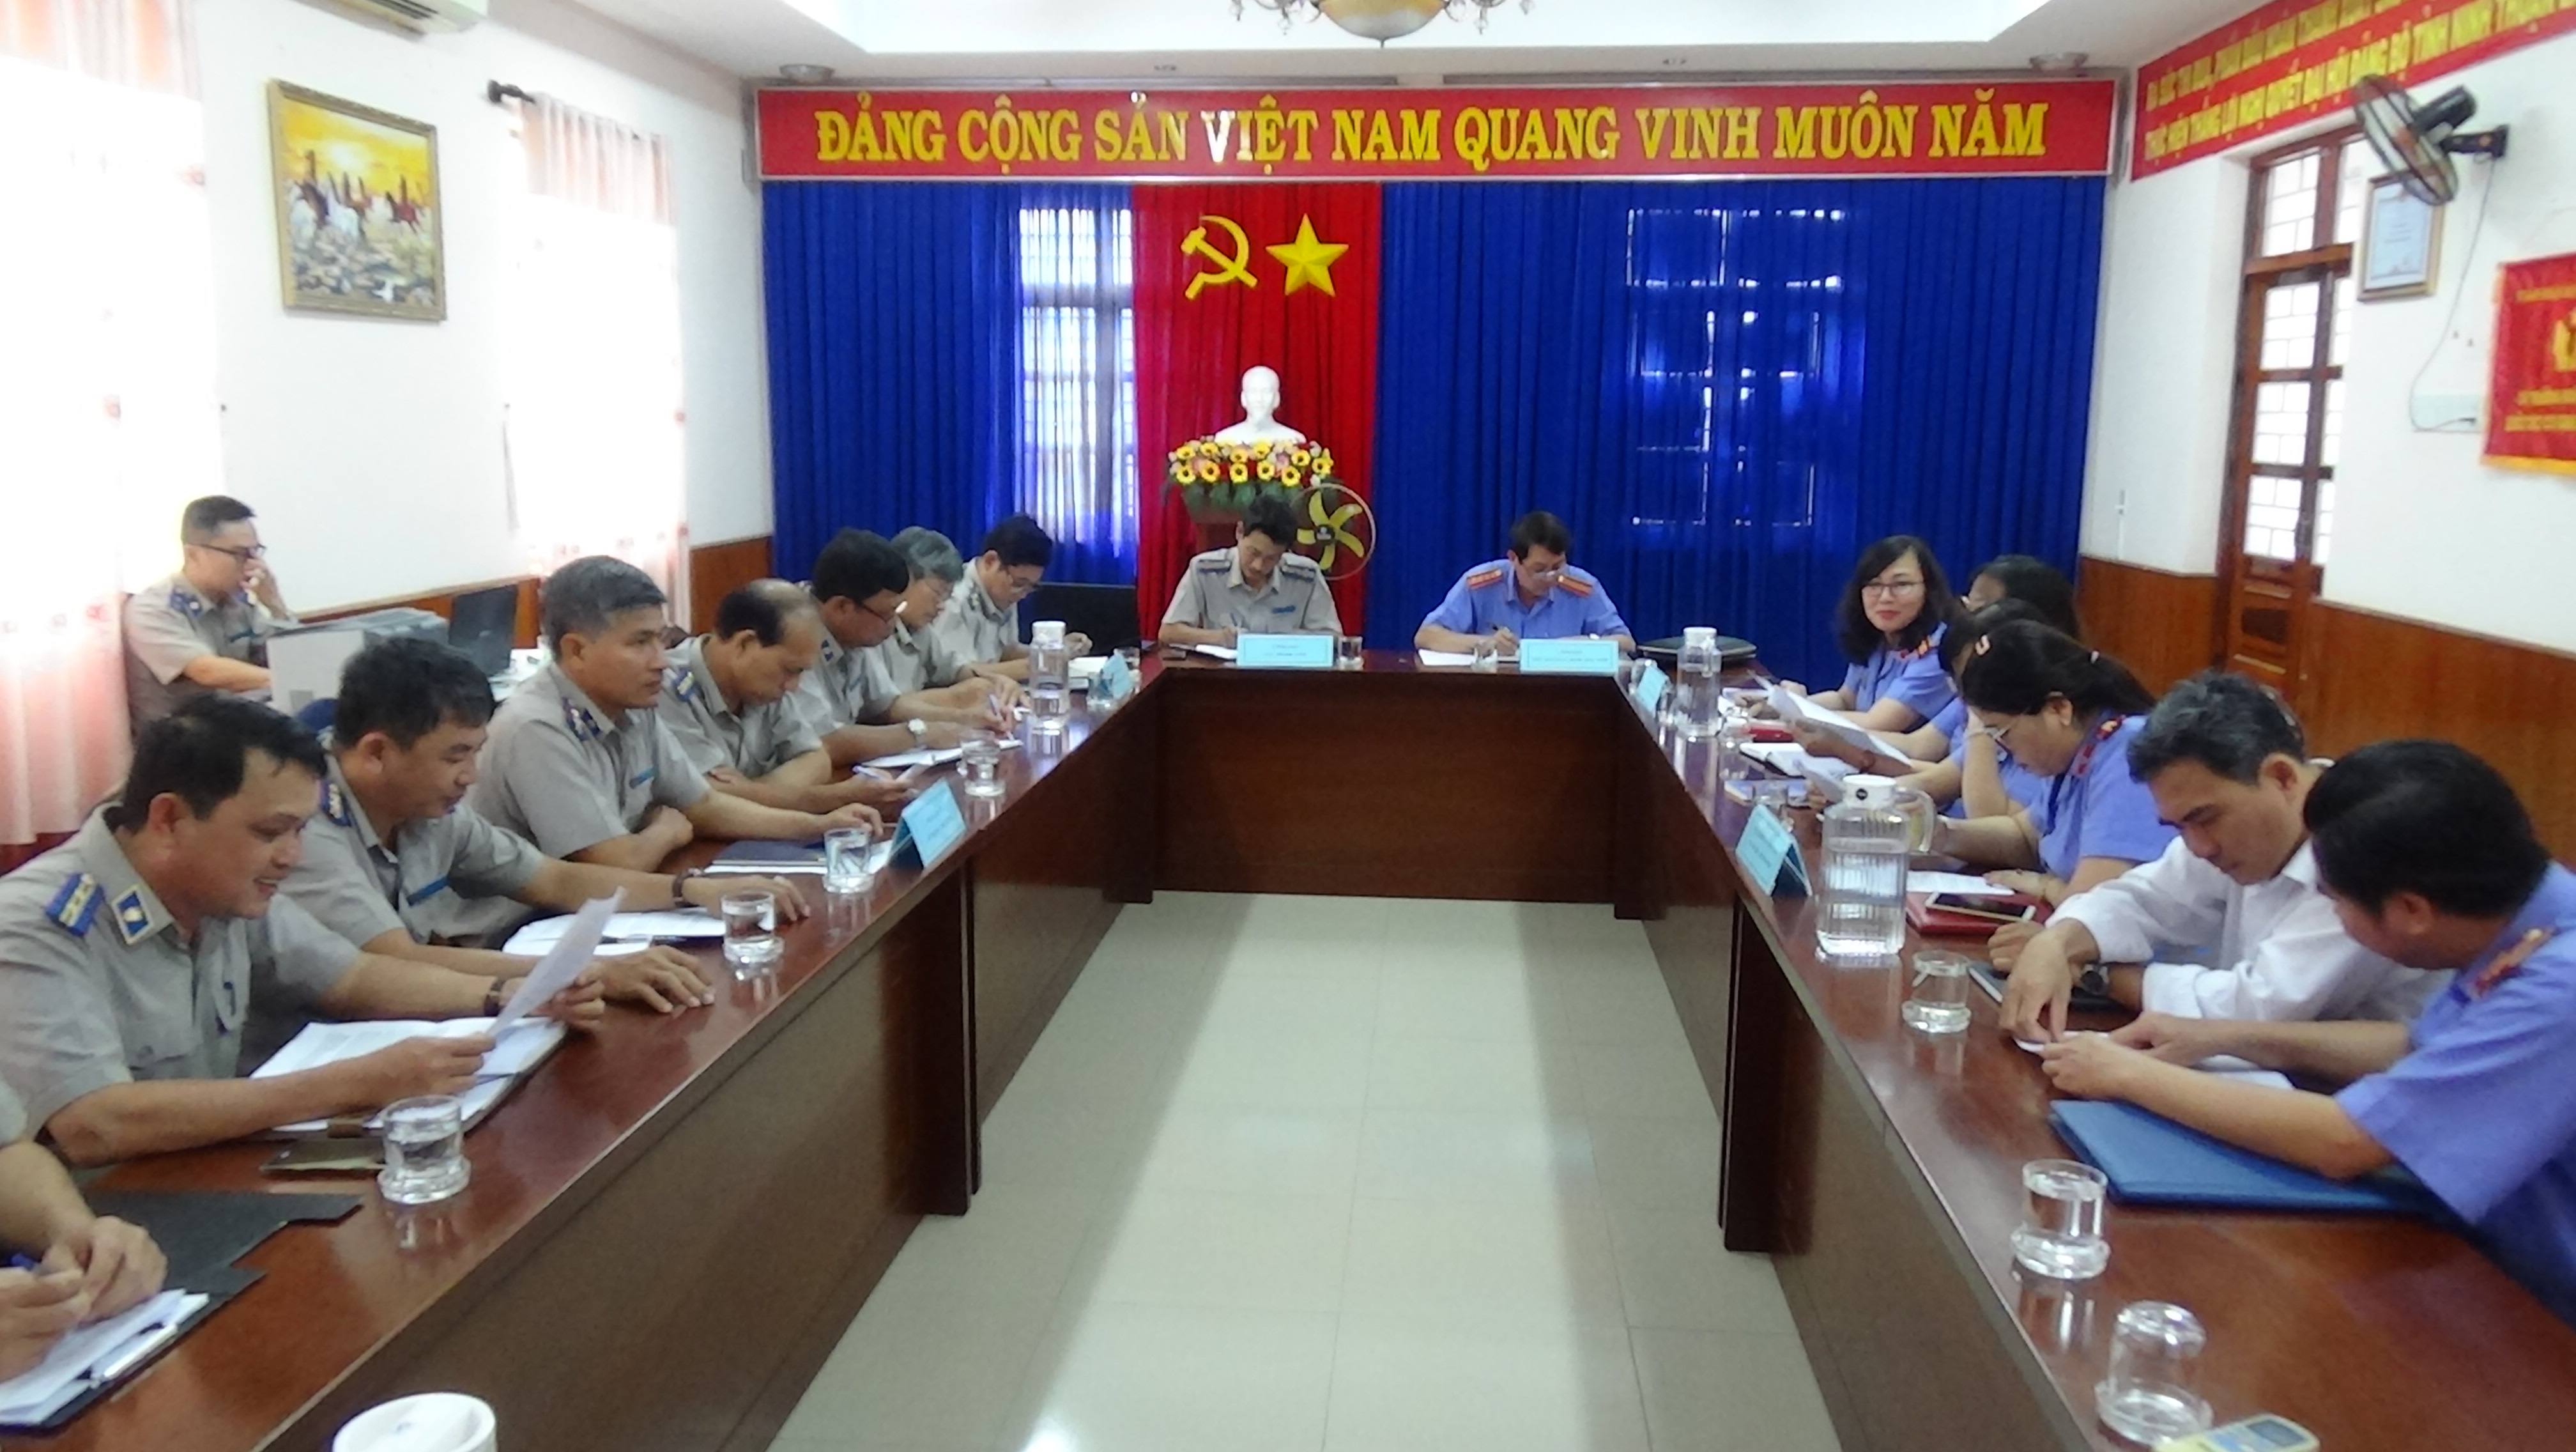 Cục Thi hành án dân sự tỉnh Ninh Thuận tổ chức họp liên ngành với Viện Kiểm sát nhân dân tỉnh Ninh Thuận